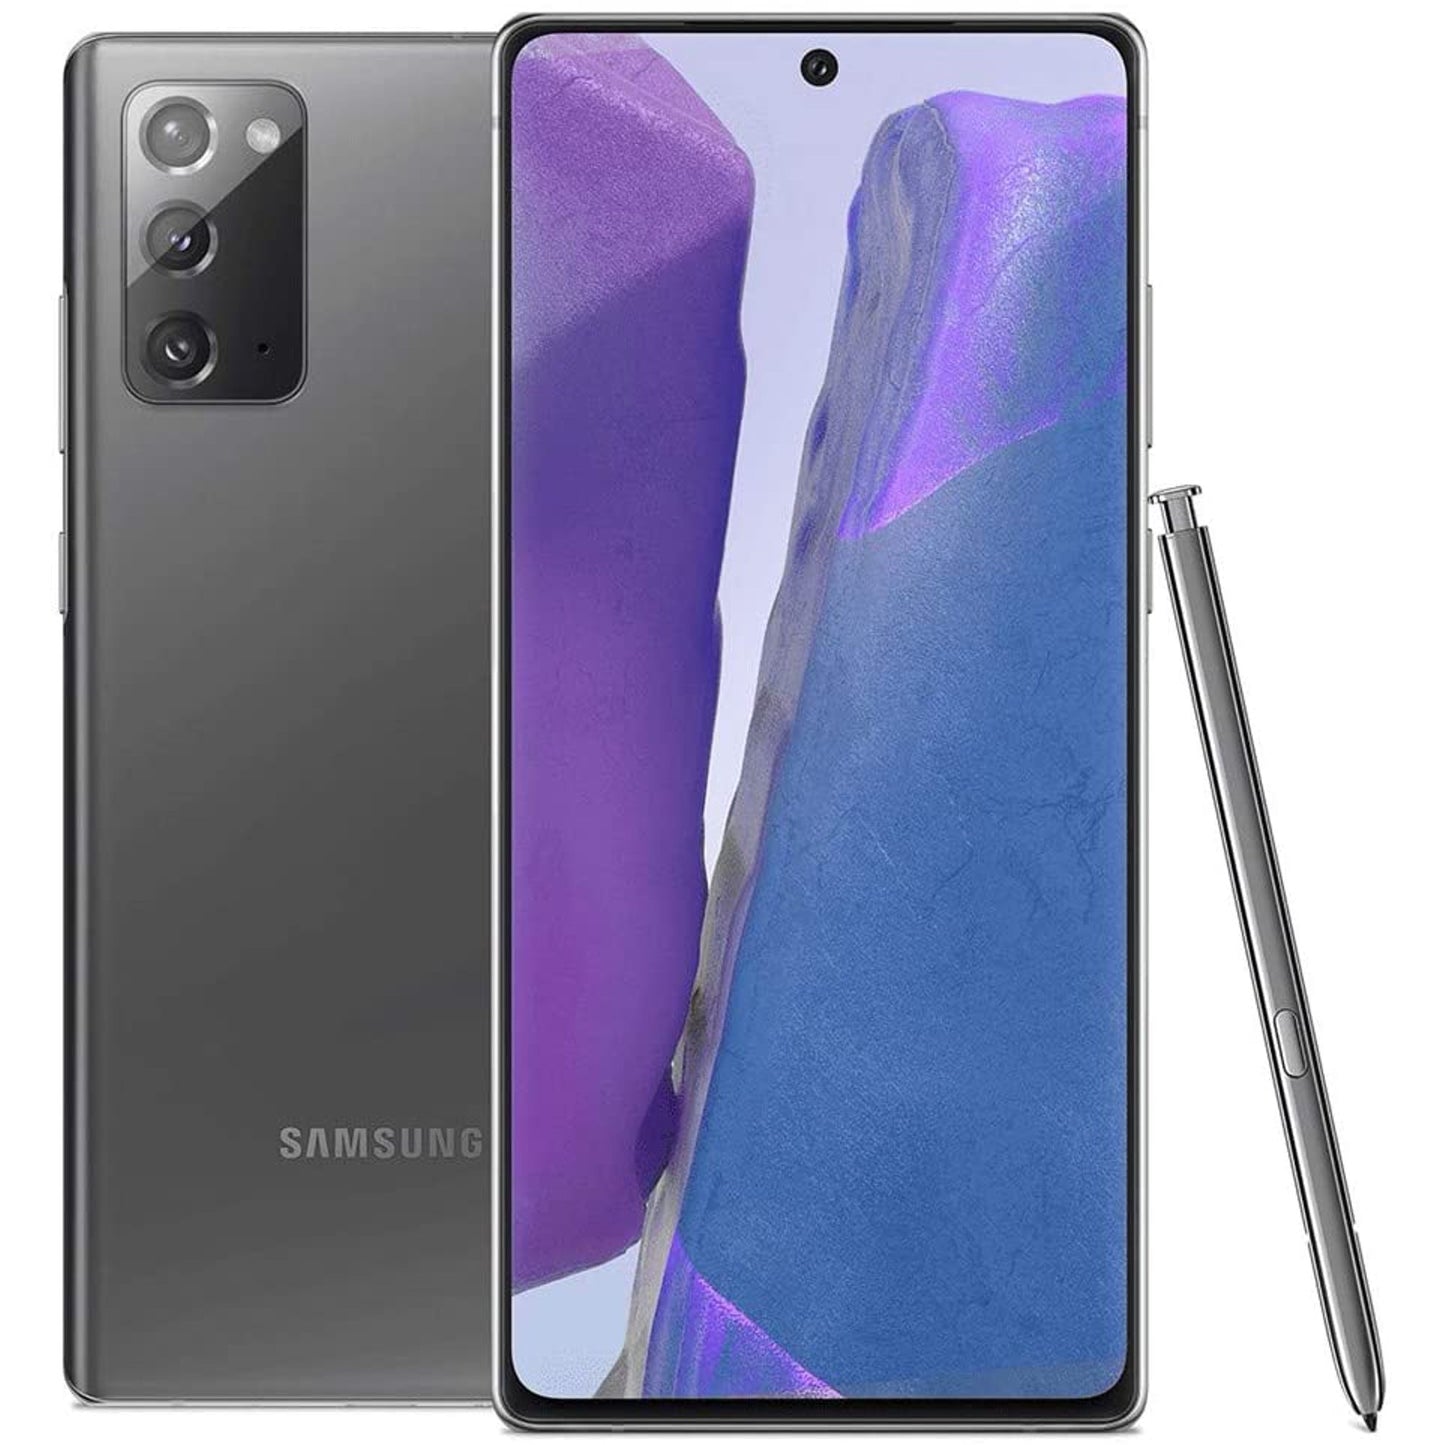 Samsung Galaxy Note 20 5G N981W / N981U -8GB / 128 GB- Unlocked